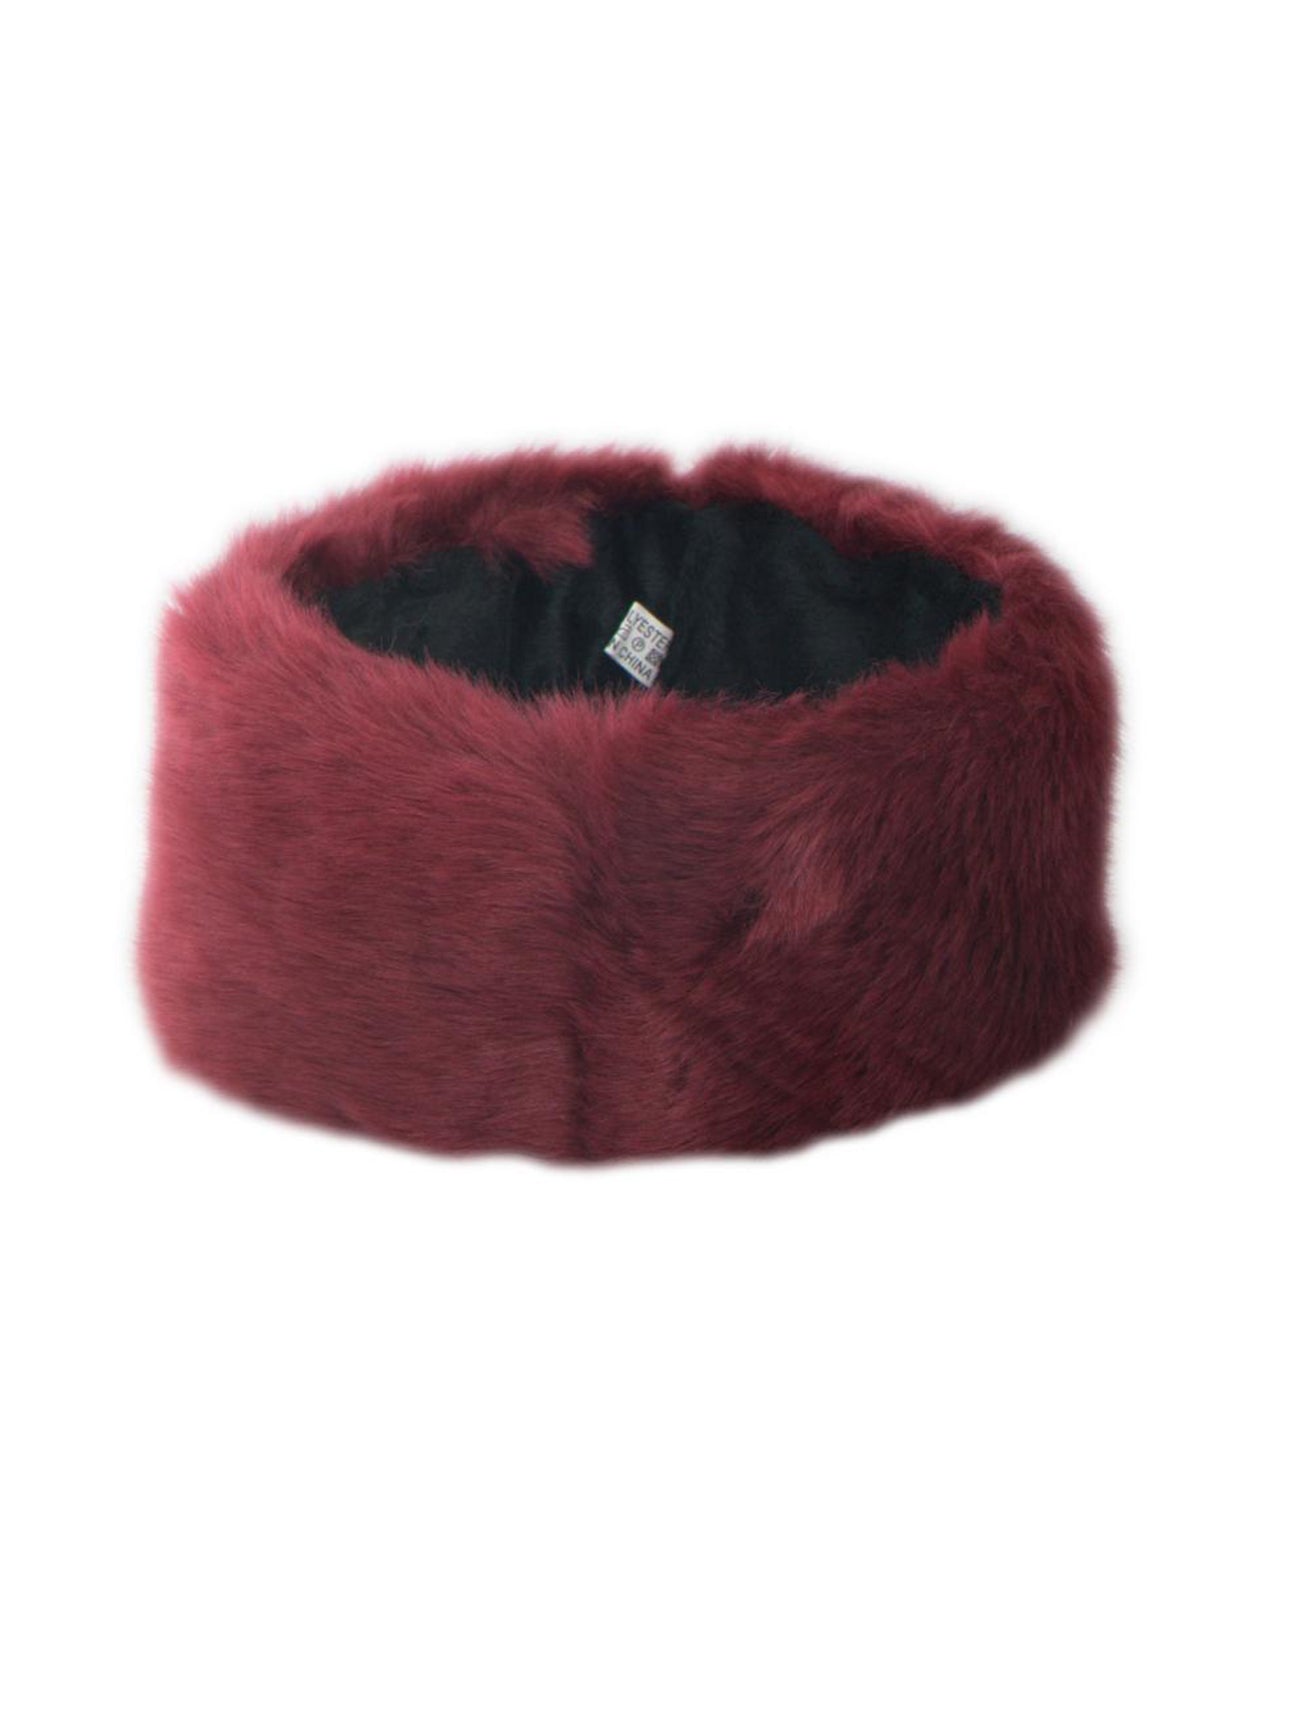 Soft Faux Fur Headband In Burgundy